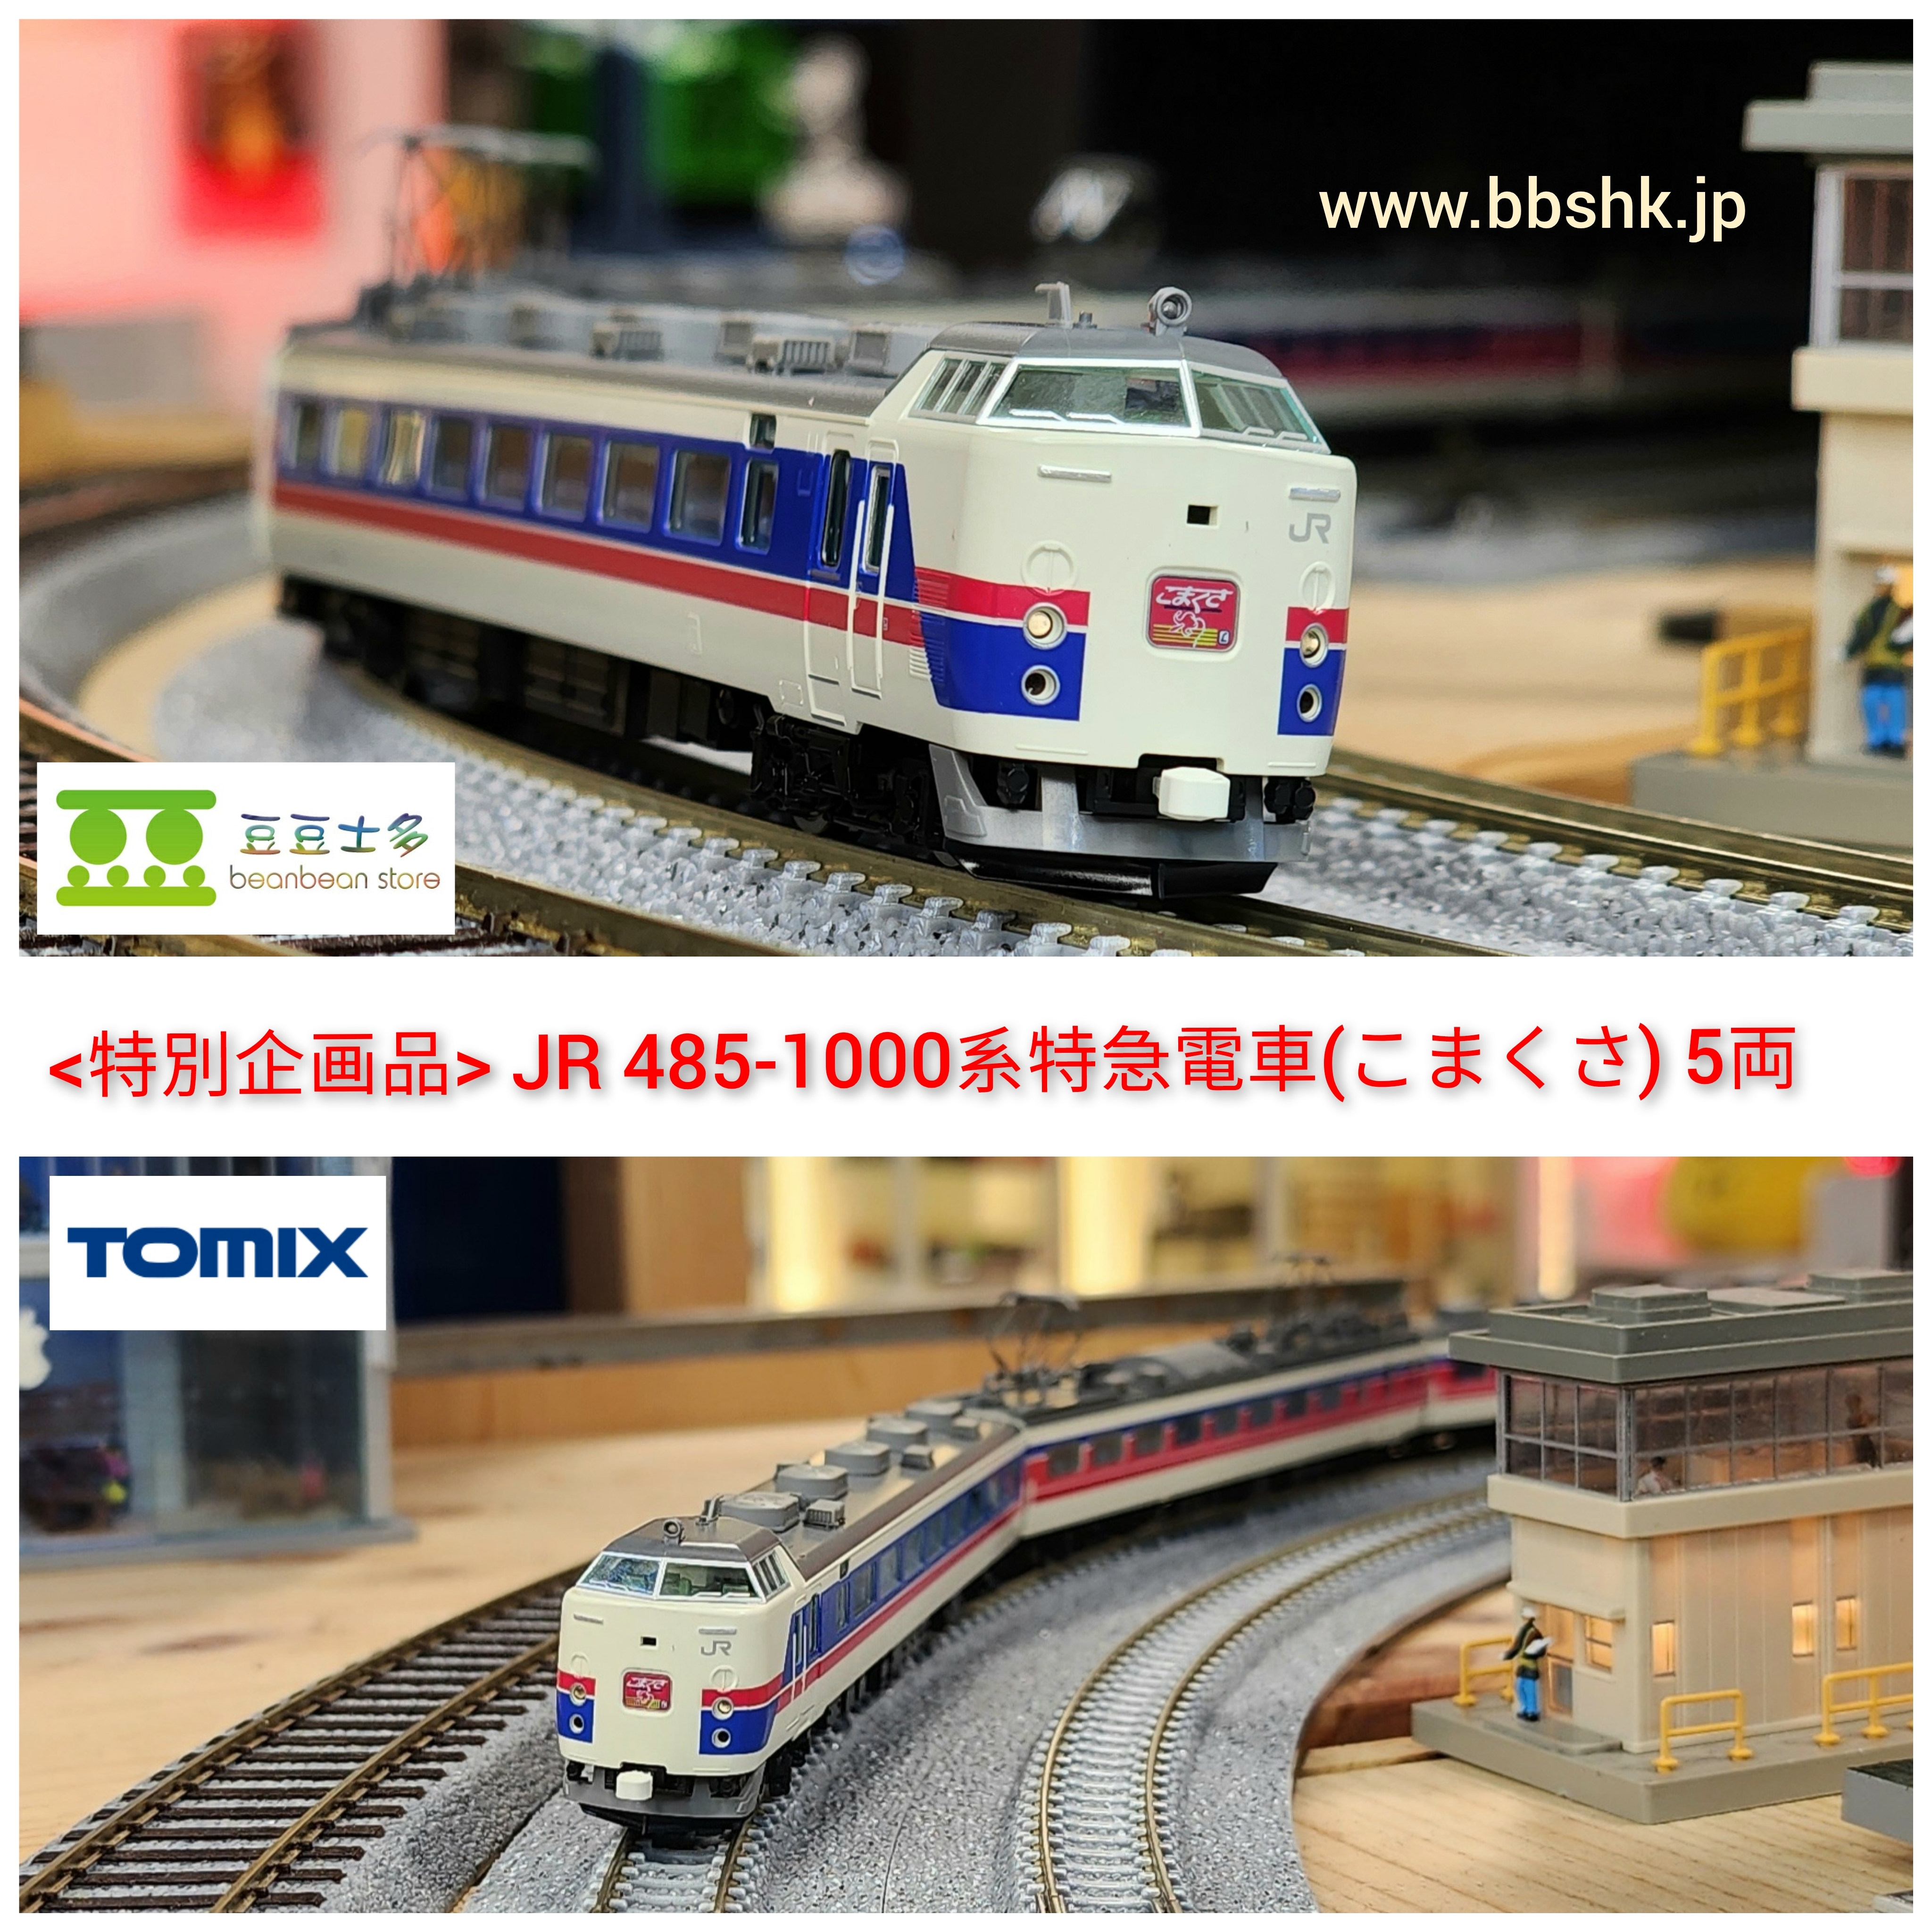 TOMIX 97952 【特別企画品】 JR 485-1000系特急電車 (こまくさ) 5両